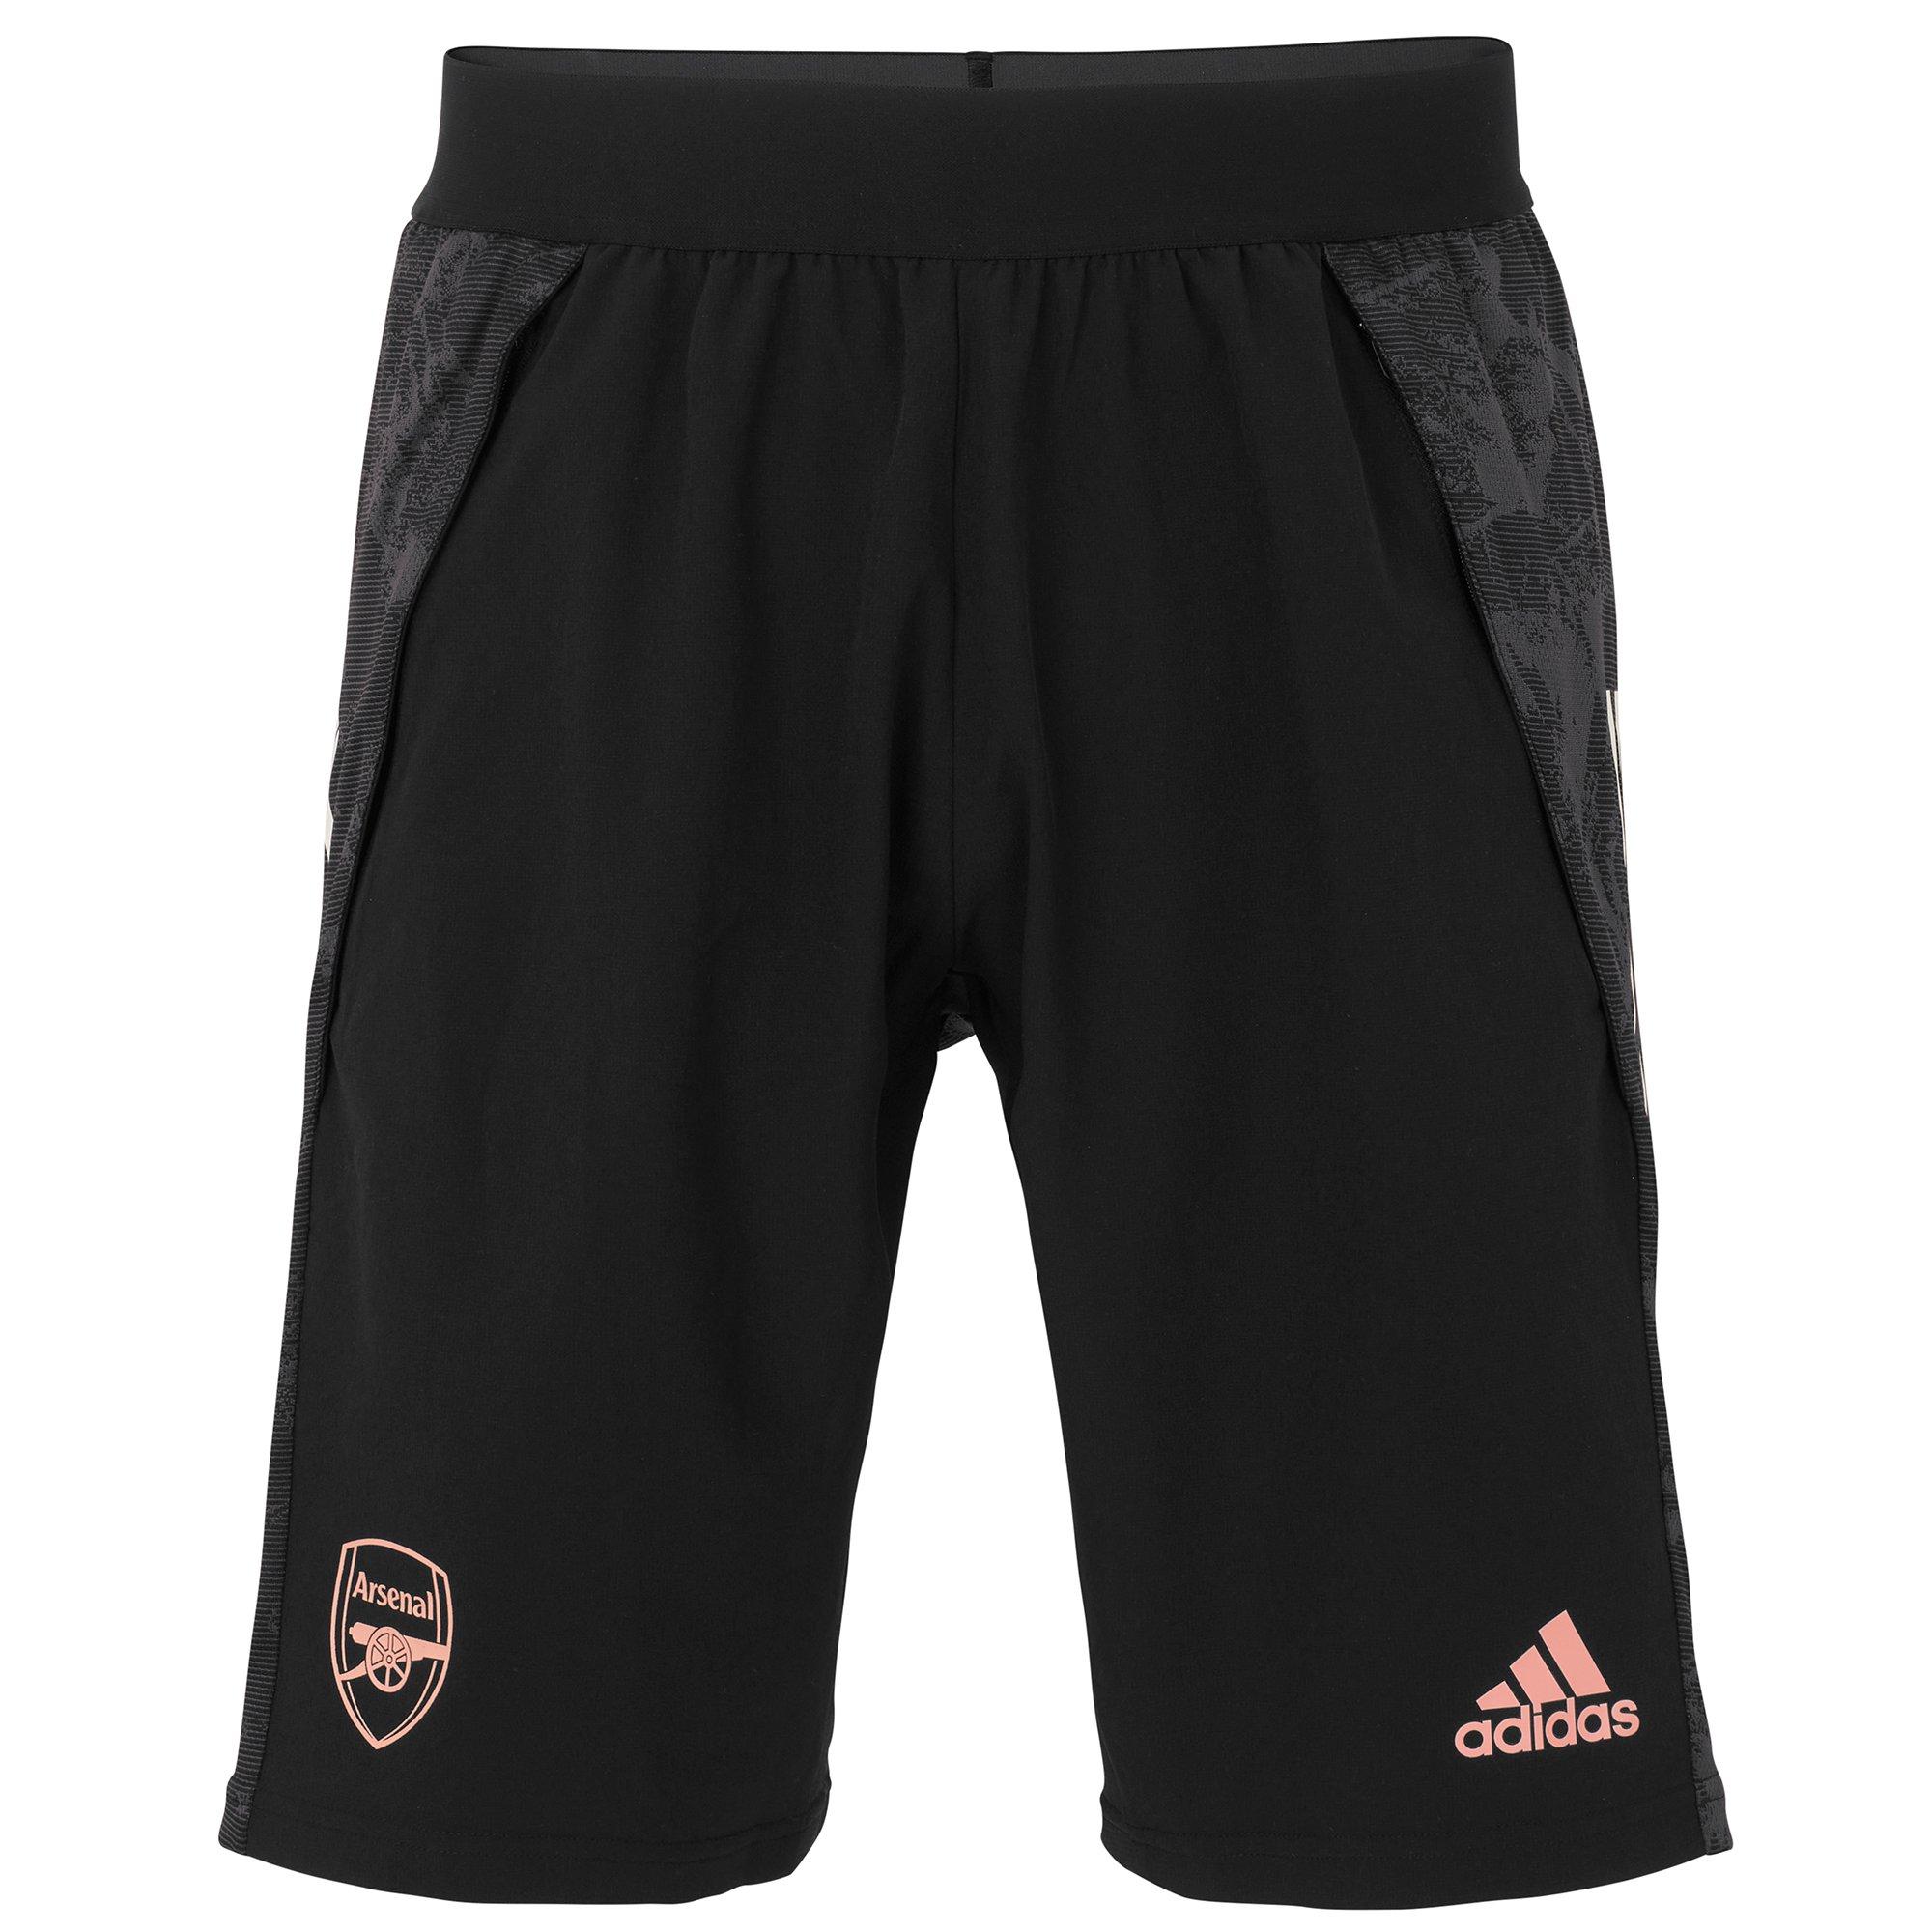 Arsenal Adult 20/21 EU Training Shorts 